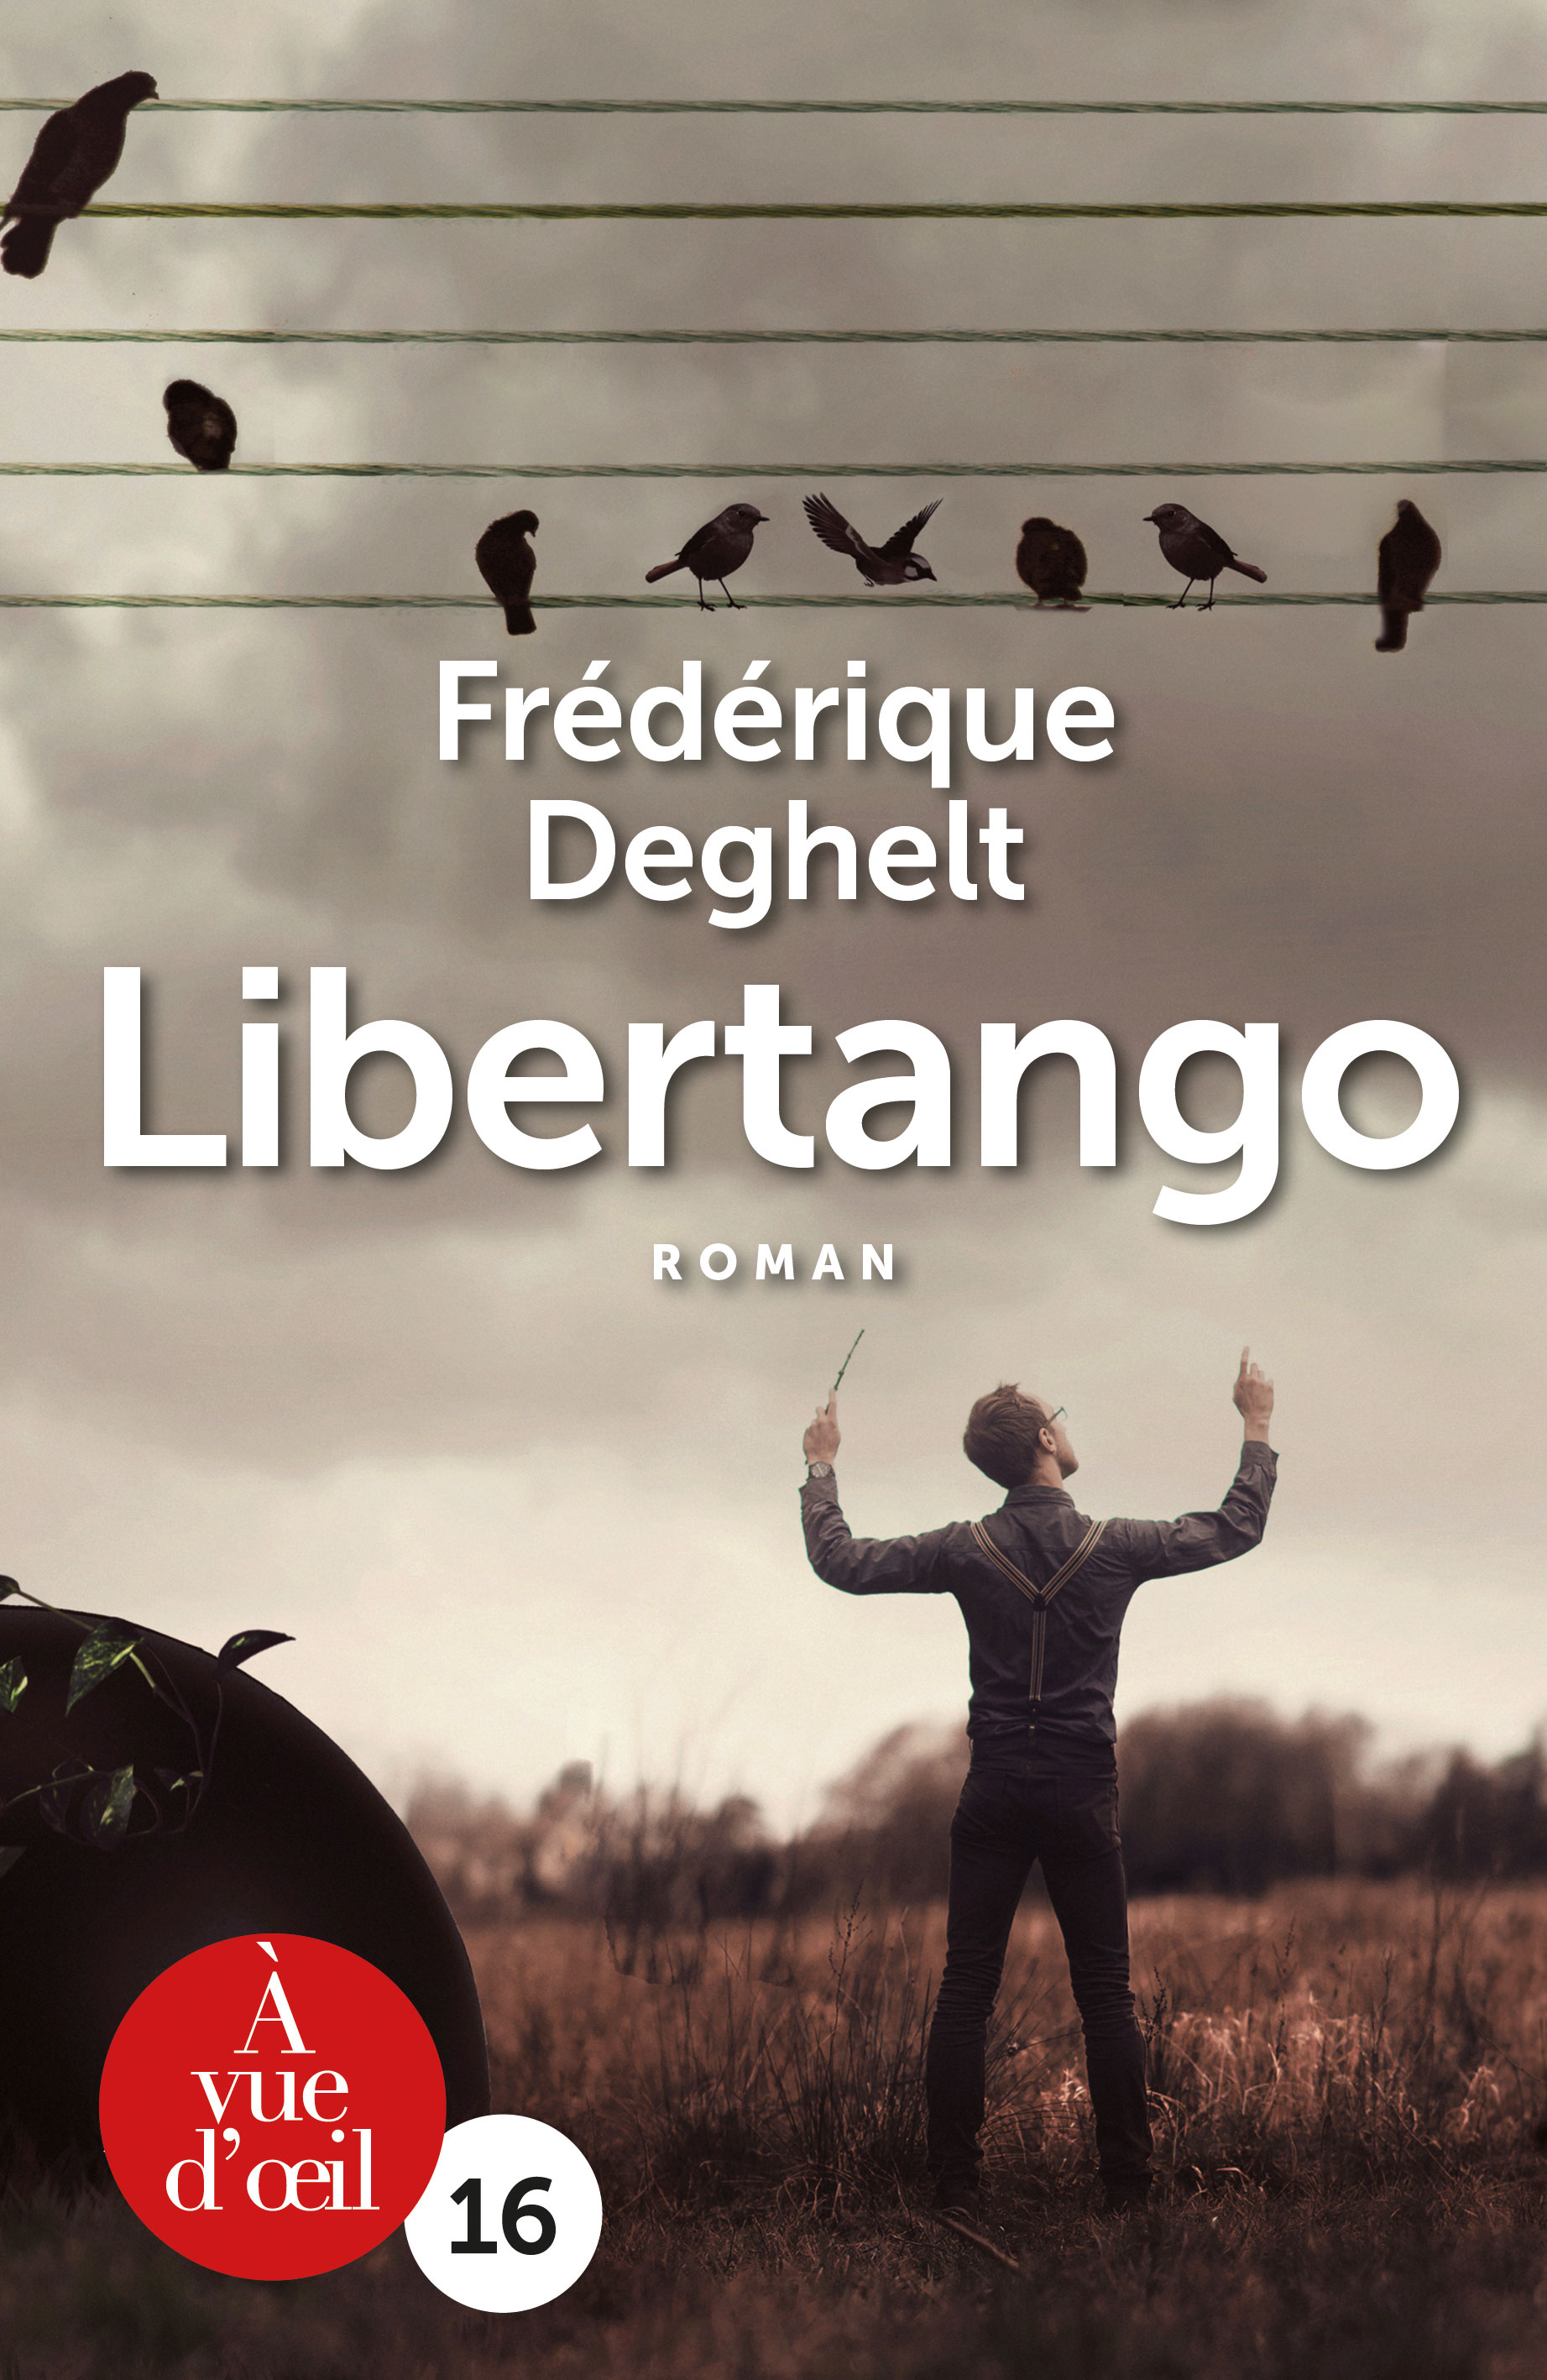 Frederique Deghelt - Book Cover